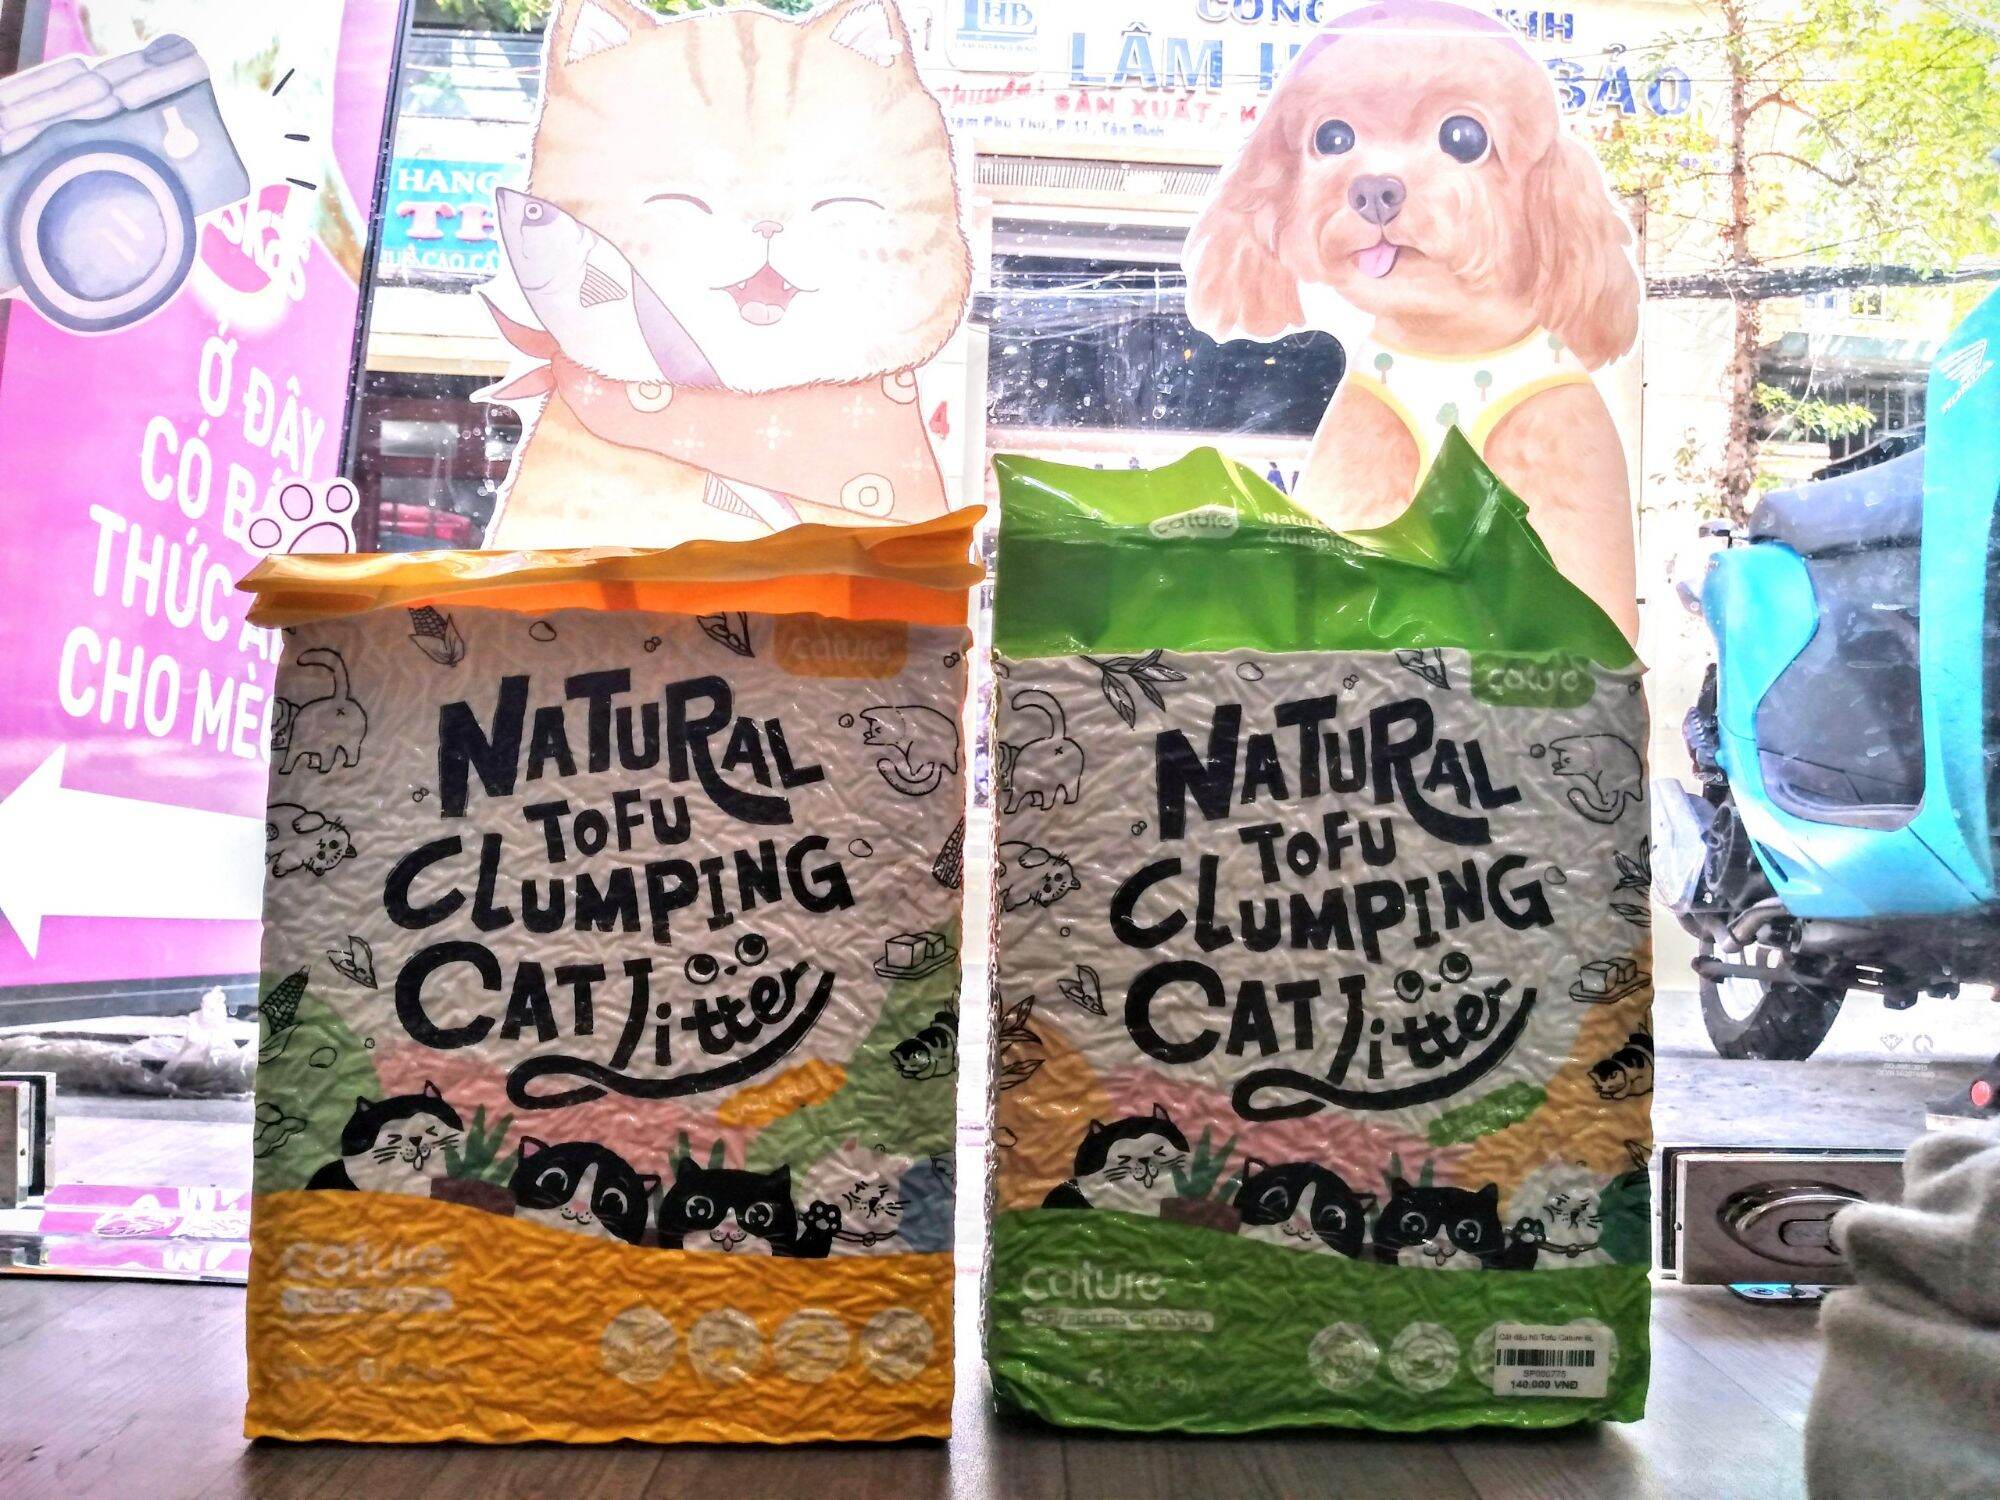 Cát đậu nành tofu cát vệ sinh cho mèo Natural hương sữa loại 7L mới